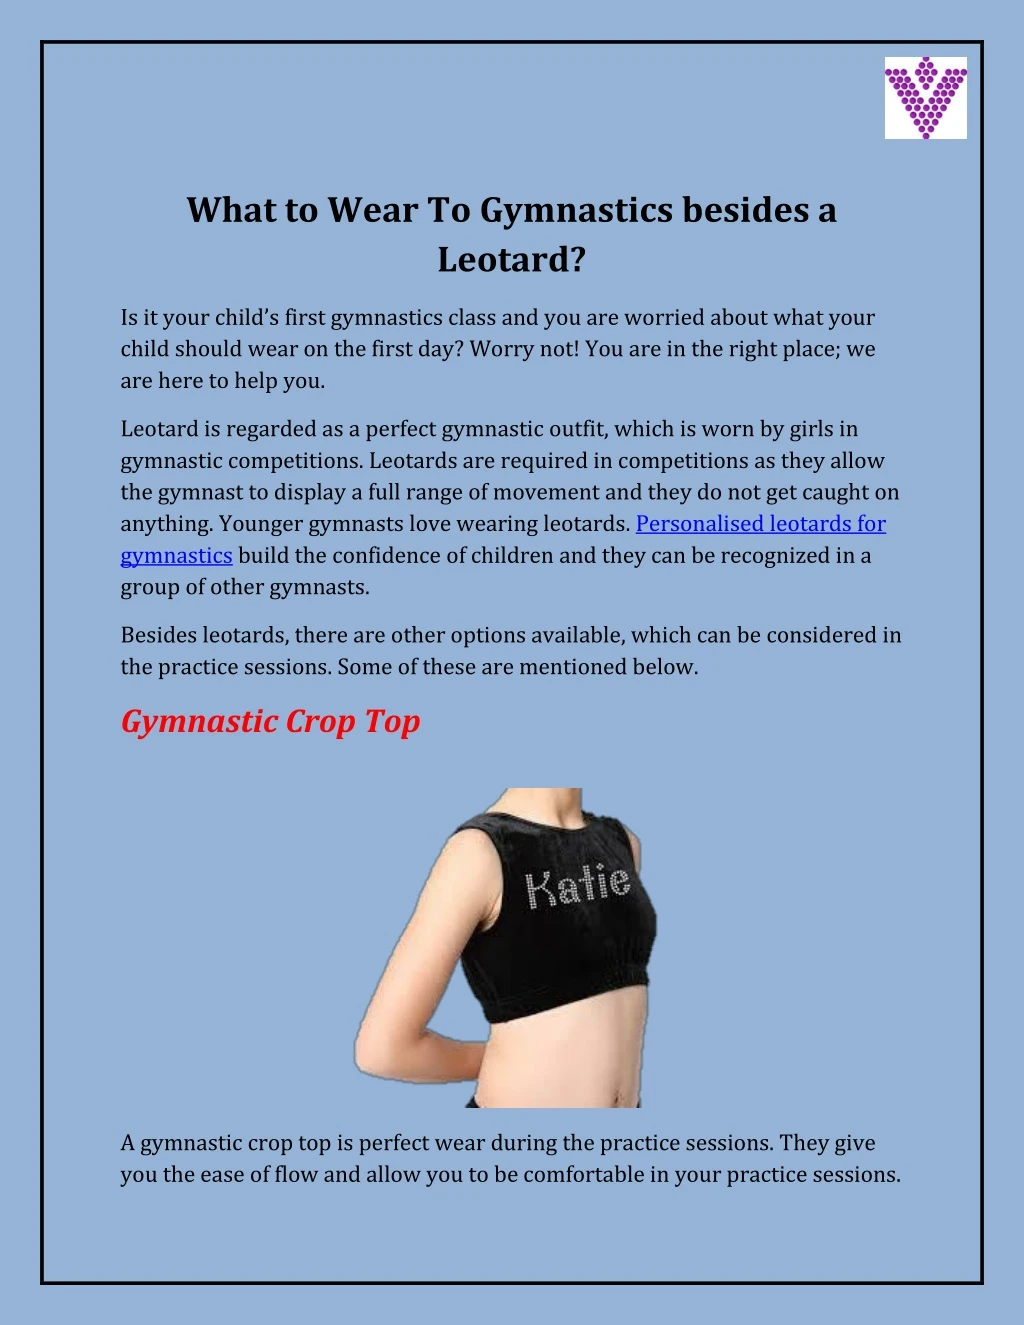 what to wear to gymnastics besides a leotard